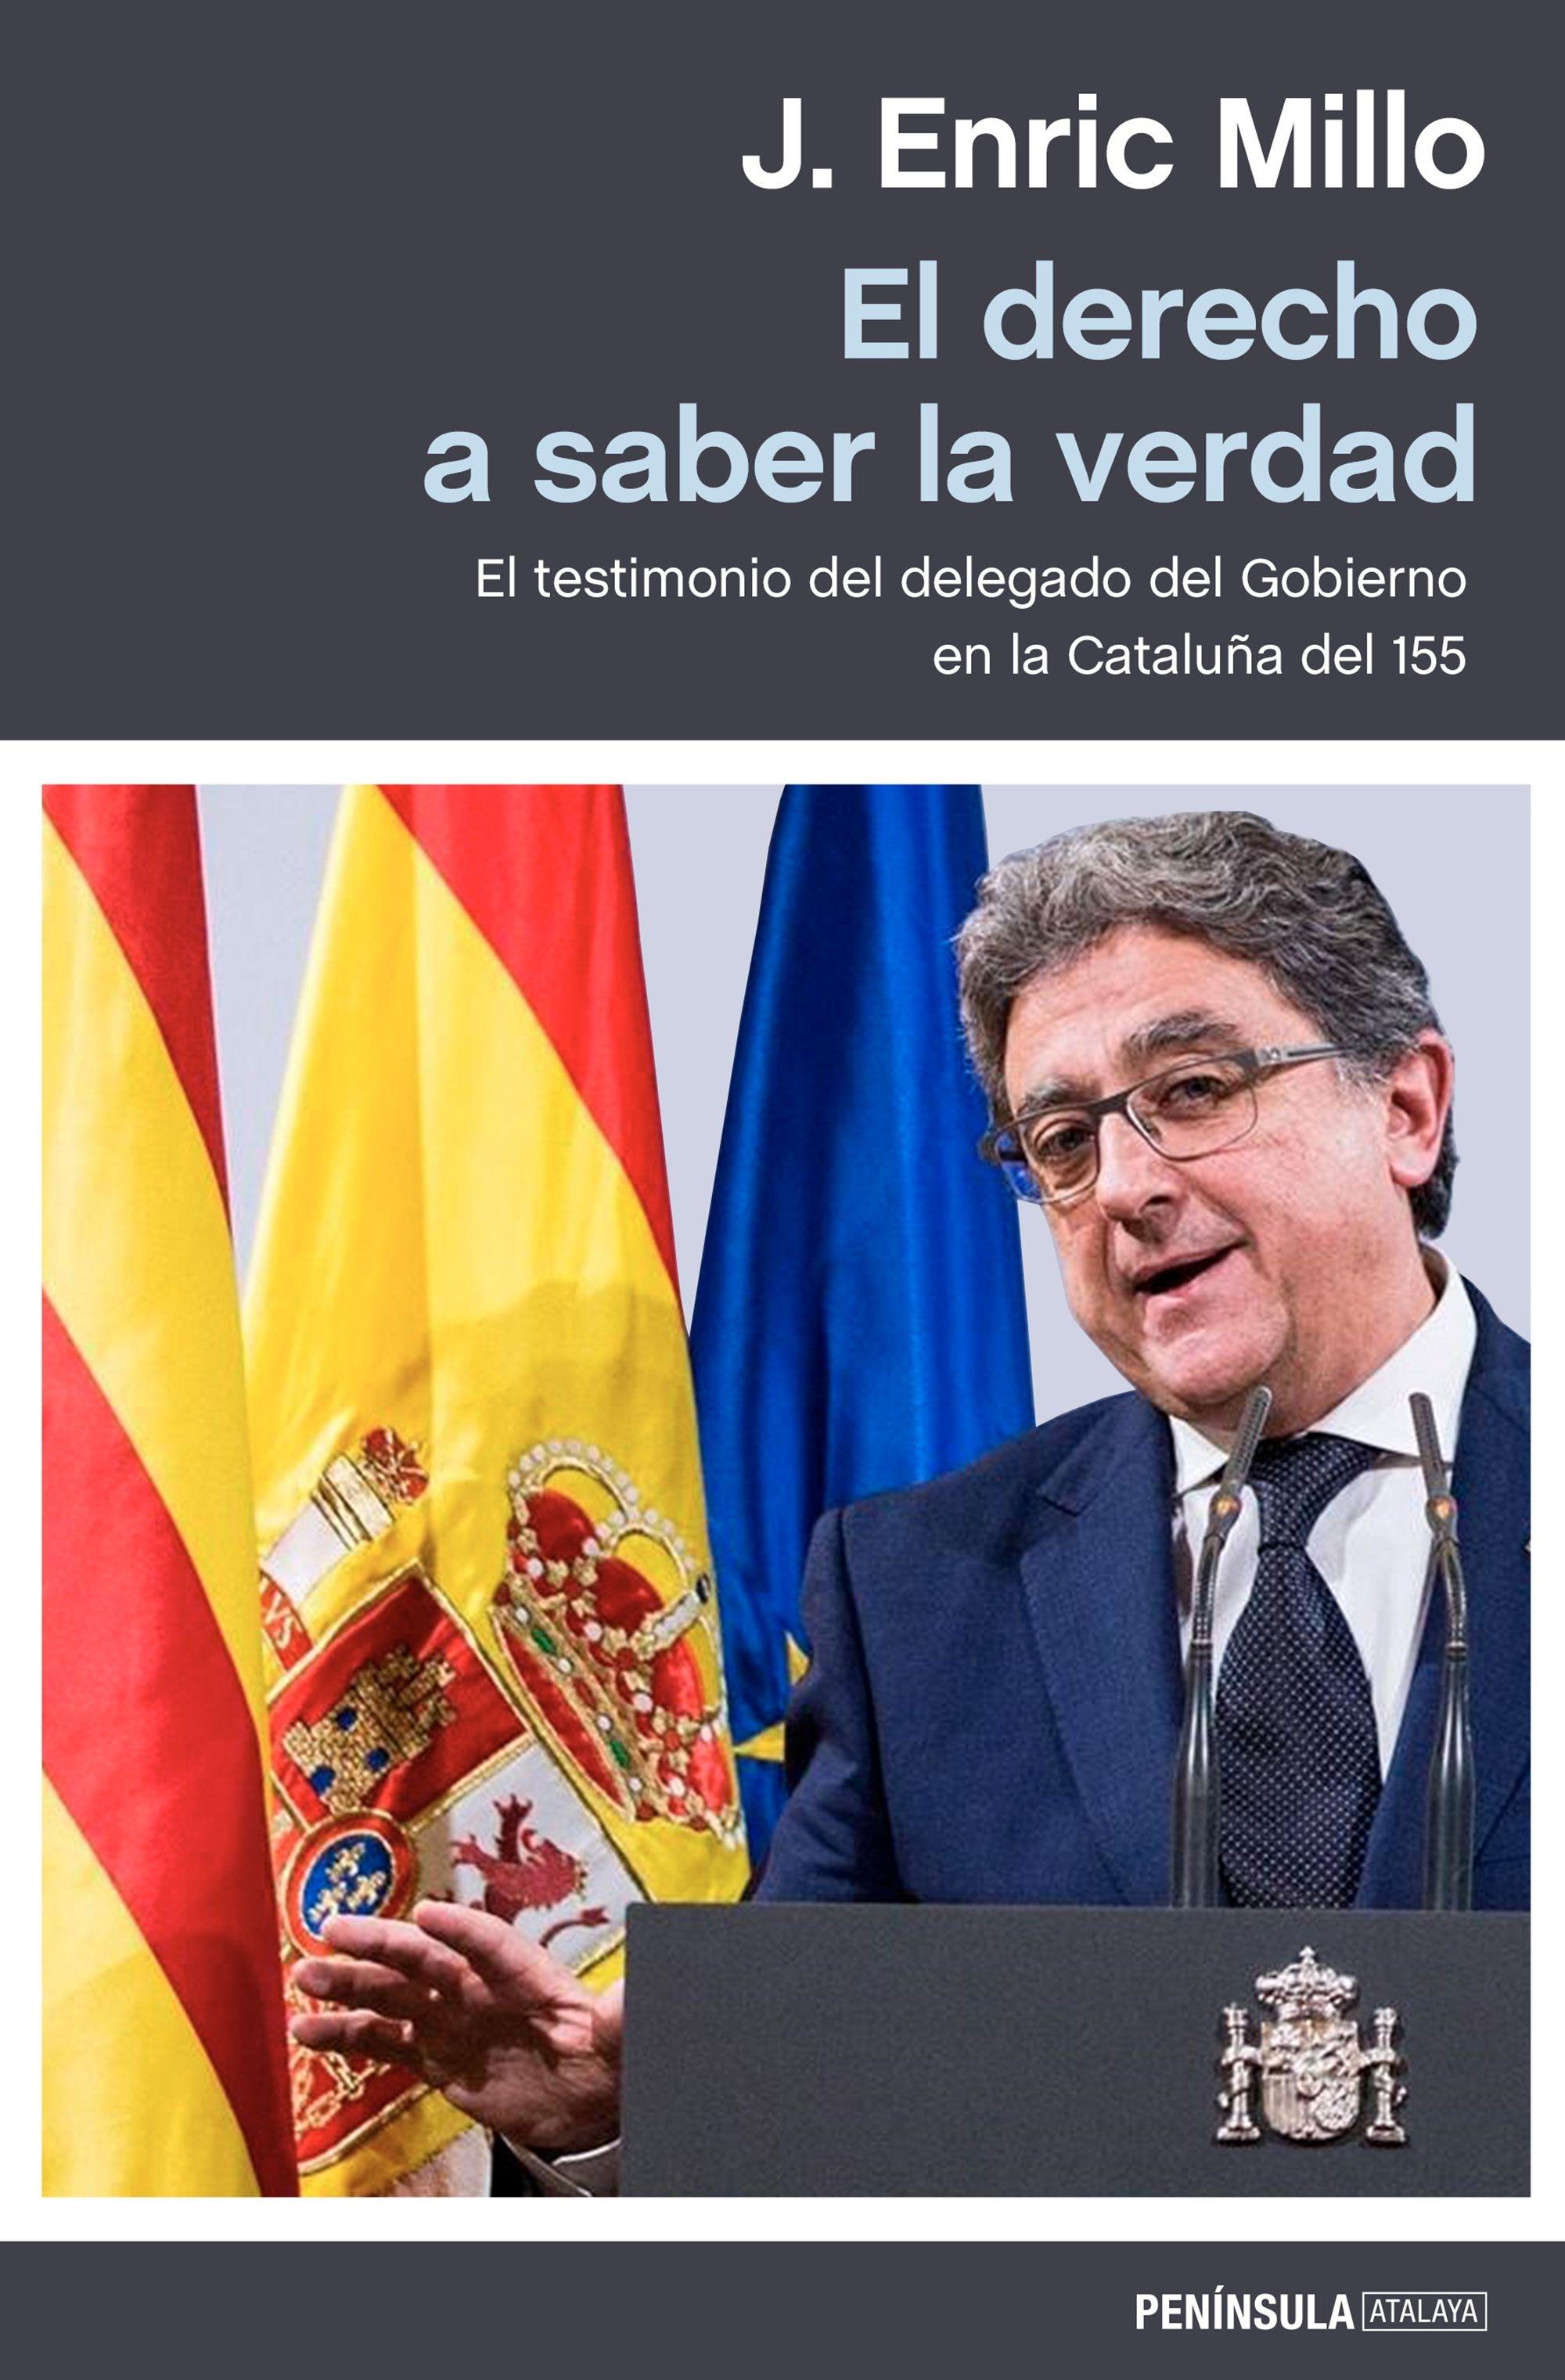 El derecho a saber la verdad "El testimonio del delegado del Gobierno en la Cataluña del 155"